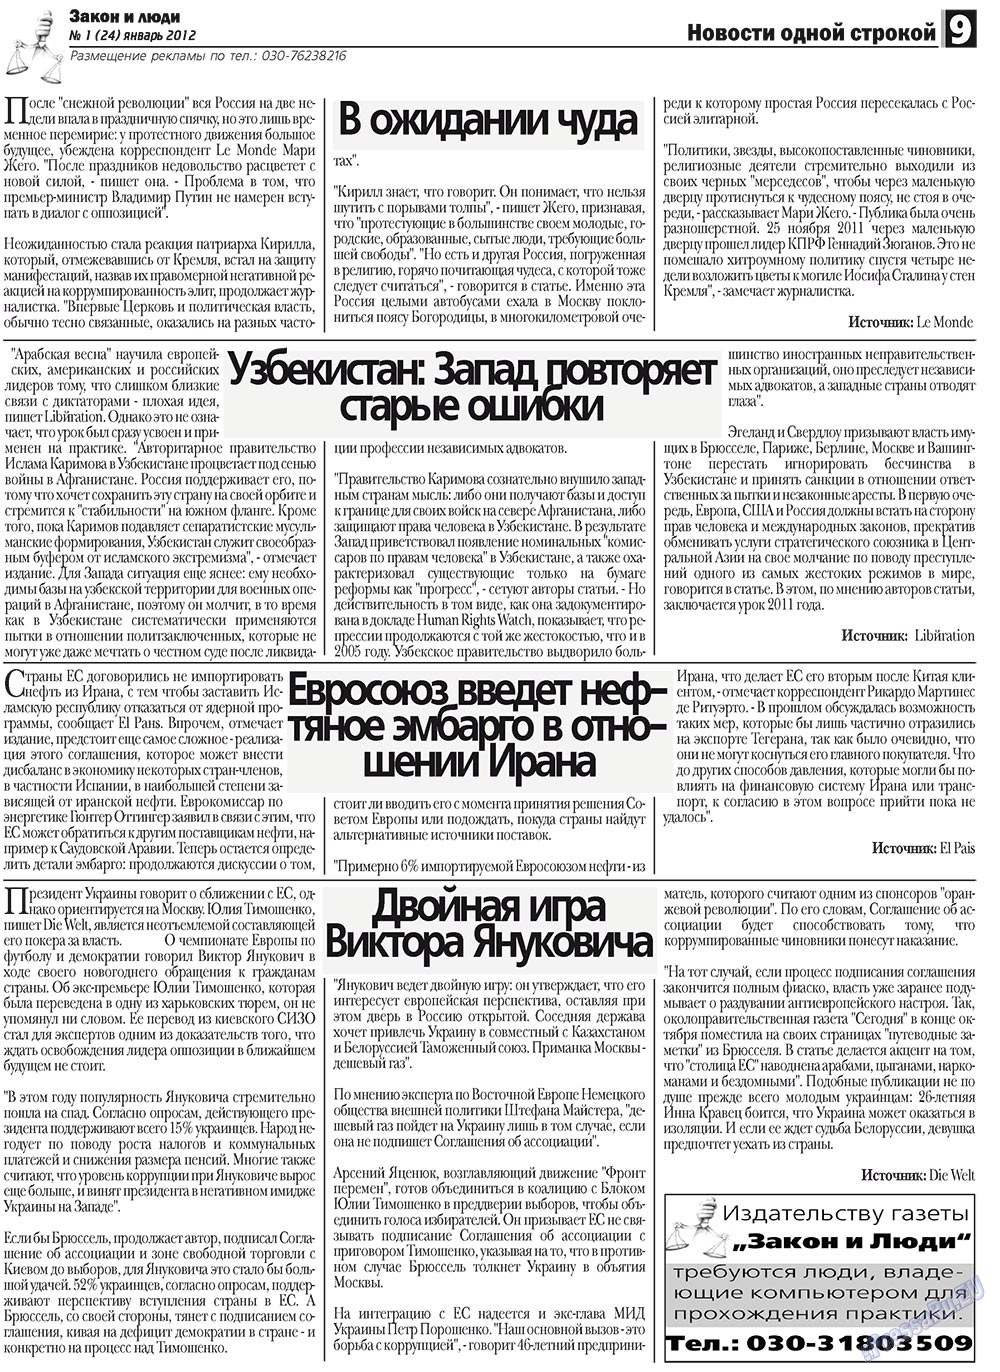 Закон и люди, газета. 2012 №1 стр.9